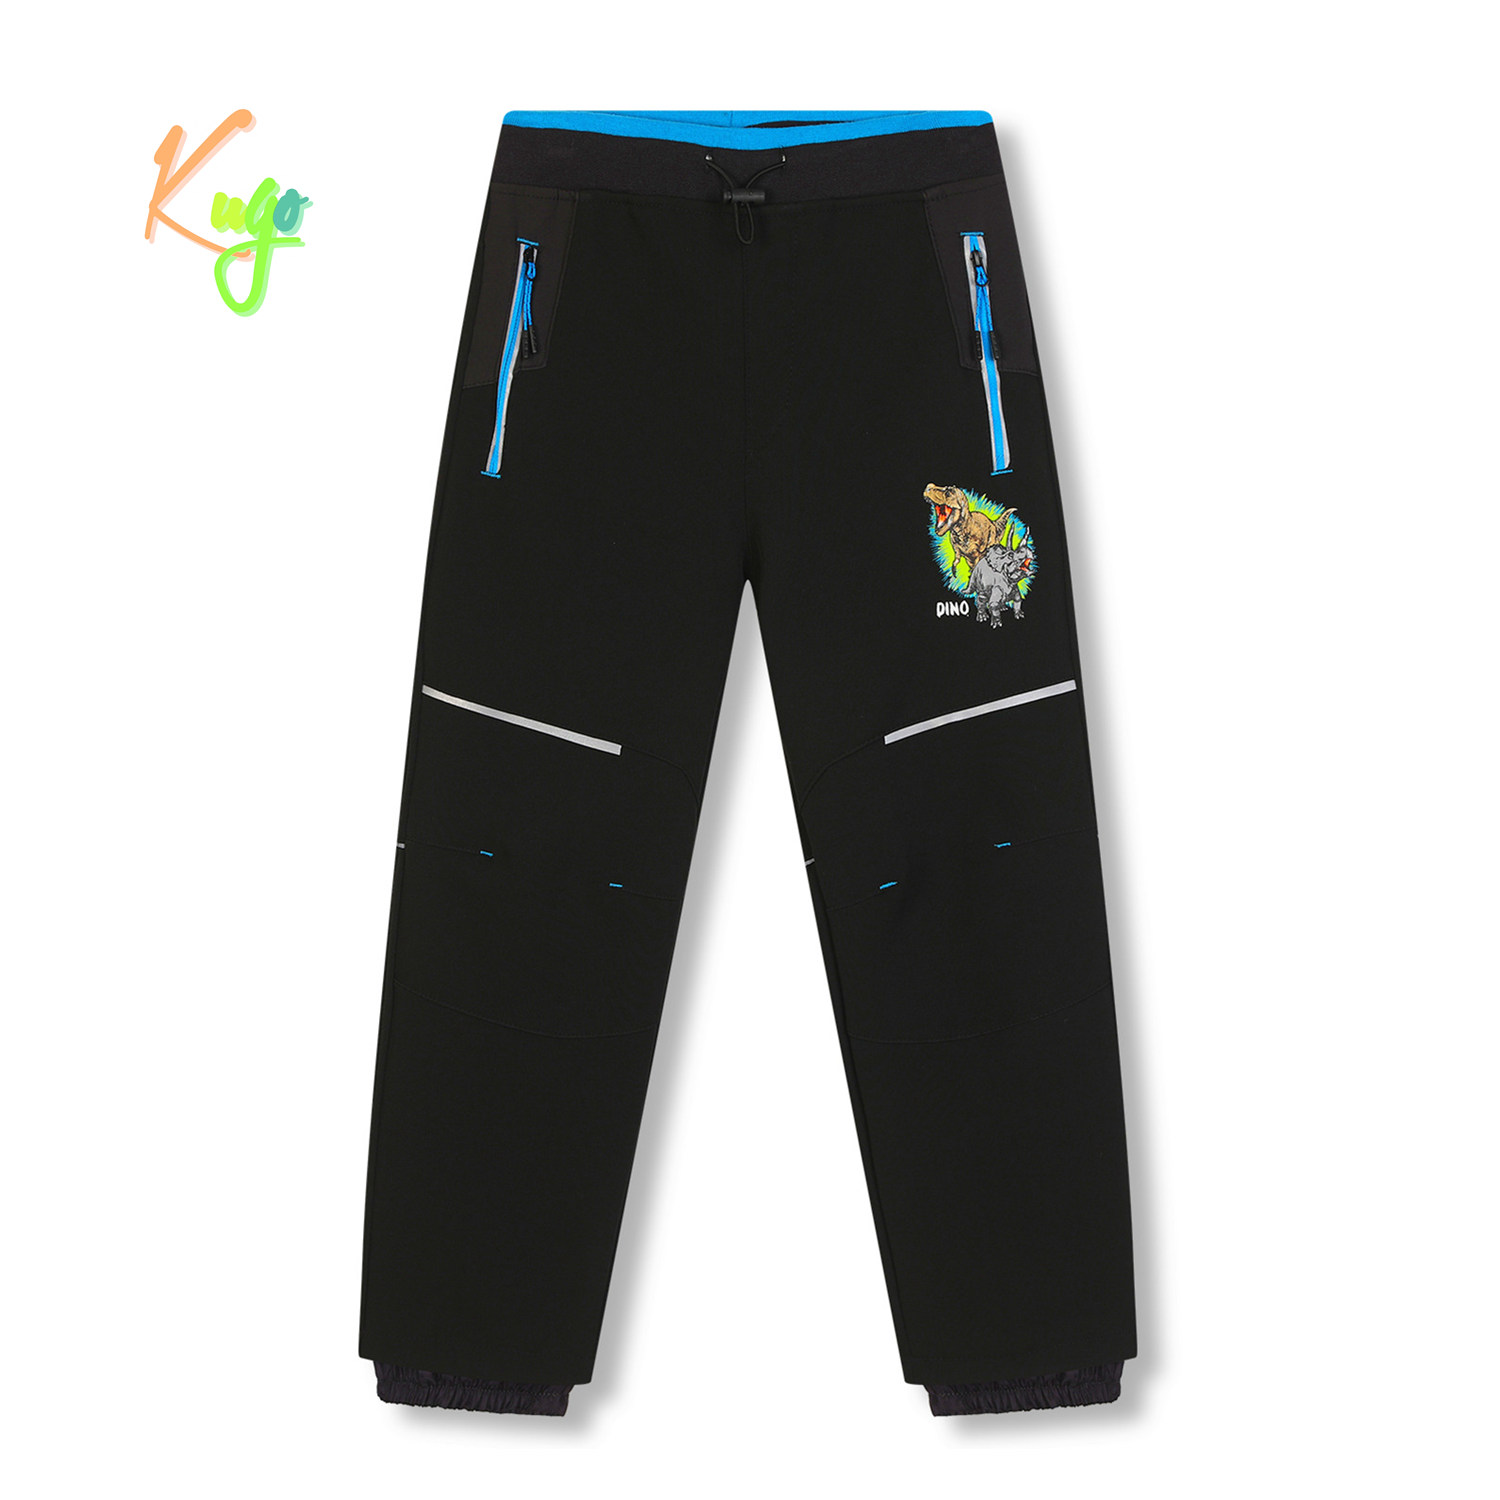 Chlapecké softshellové kalhoty, zateplené - KUGO HK5612, černá / tyrkysové zipy Barva: Černá, Velikost: 110